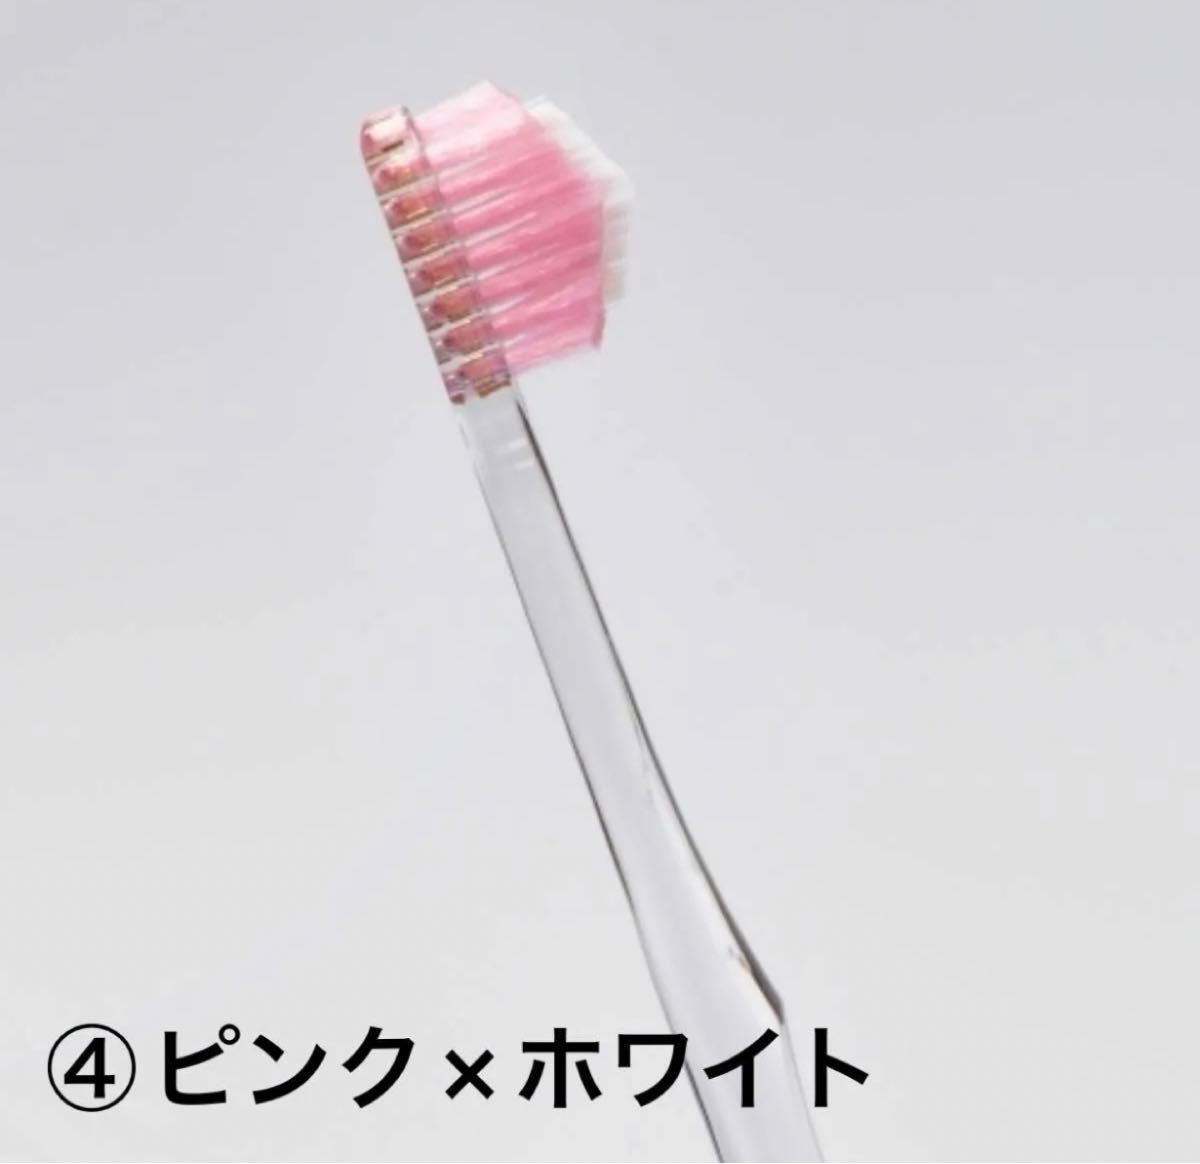 【お好きな5本お選びください】奇跡の歯ブラシ(ミュゼホワイトニングモデル)5本セット